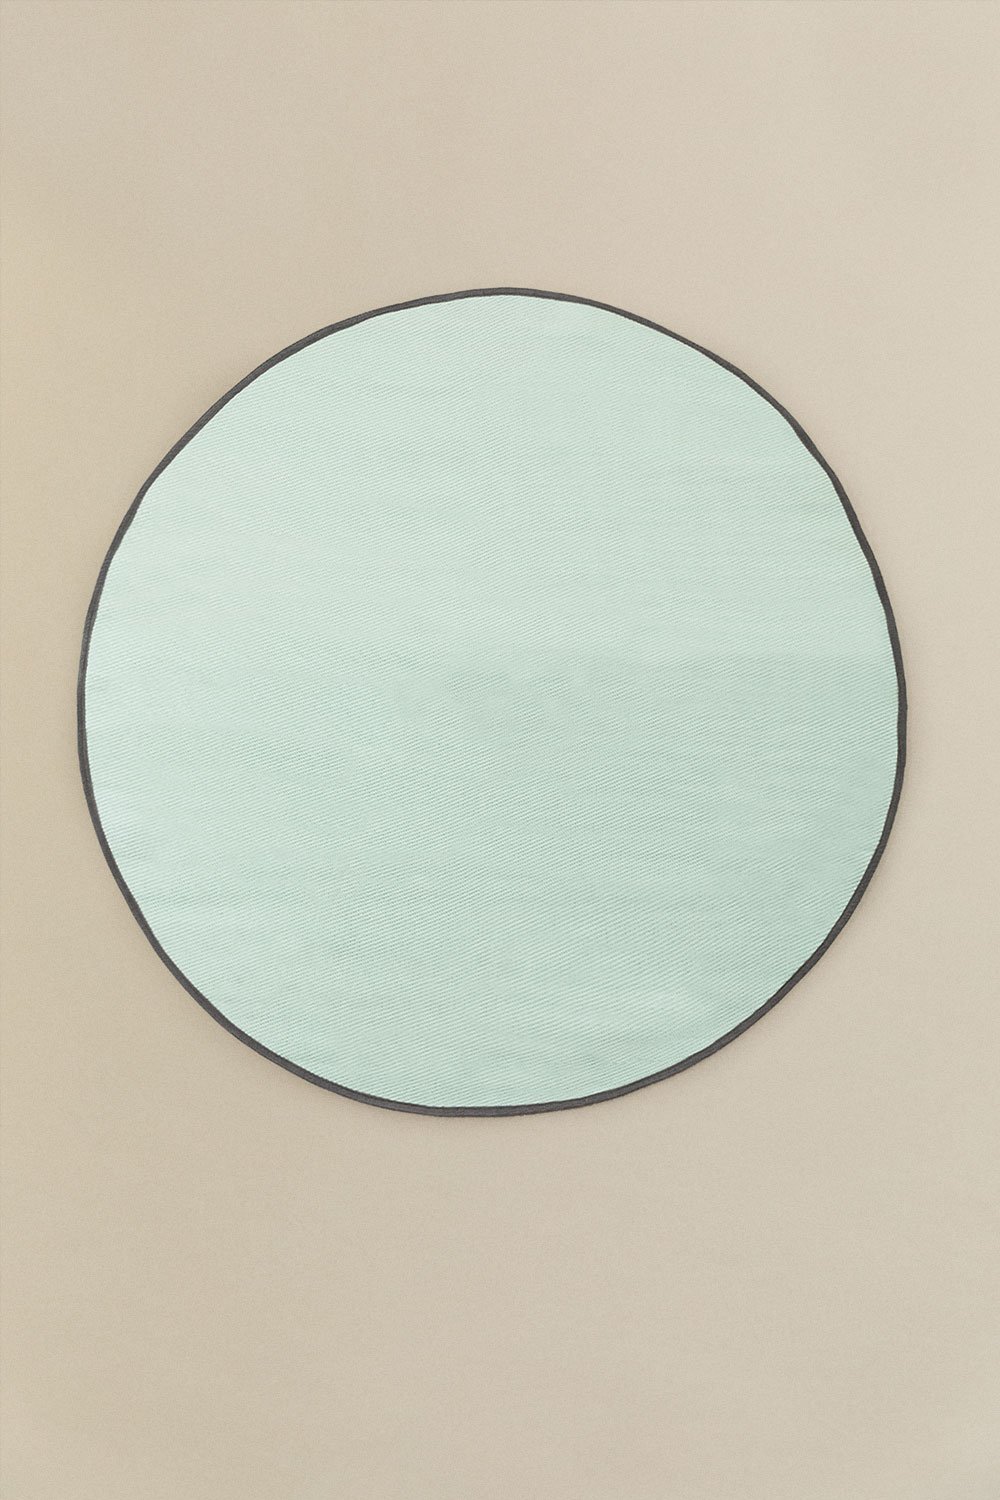 Tappeto rotondo per esterni (Ø170 cm) Tanida, immagine della galleria 1